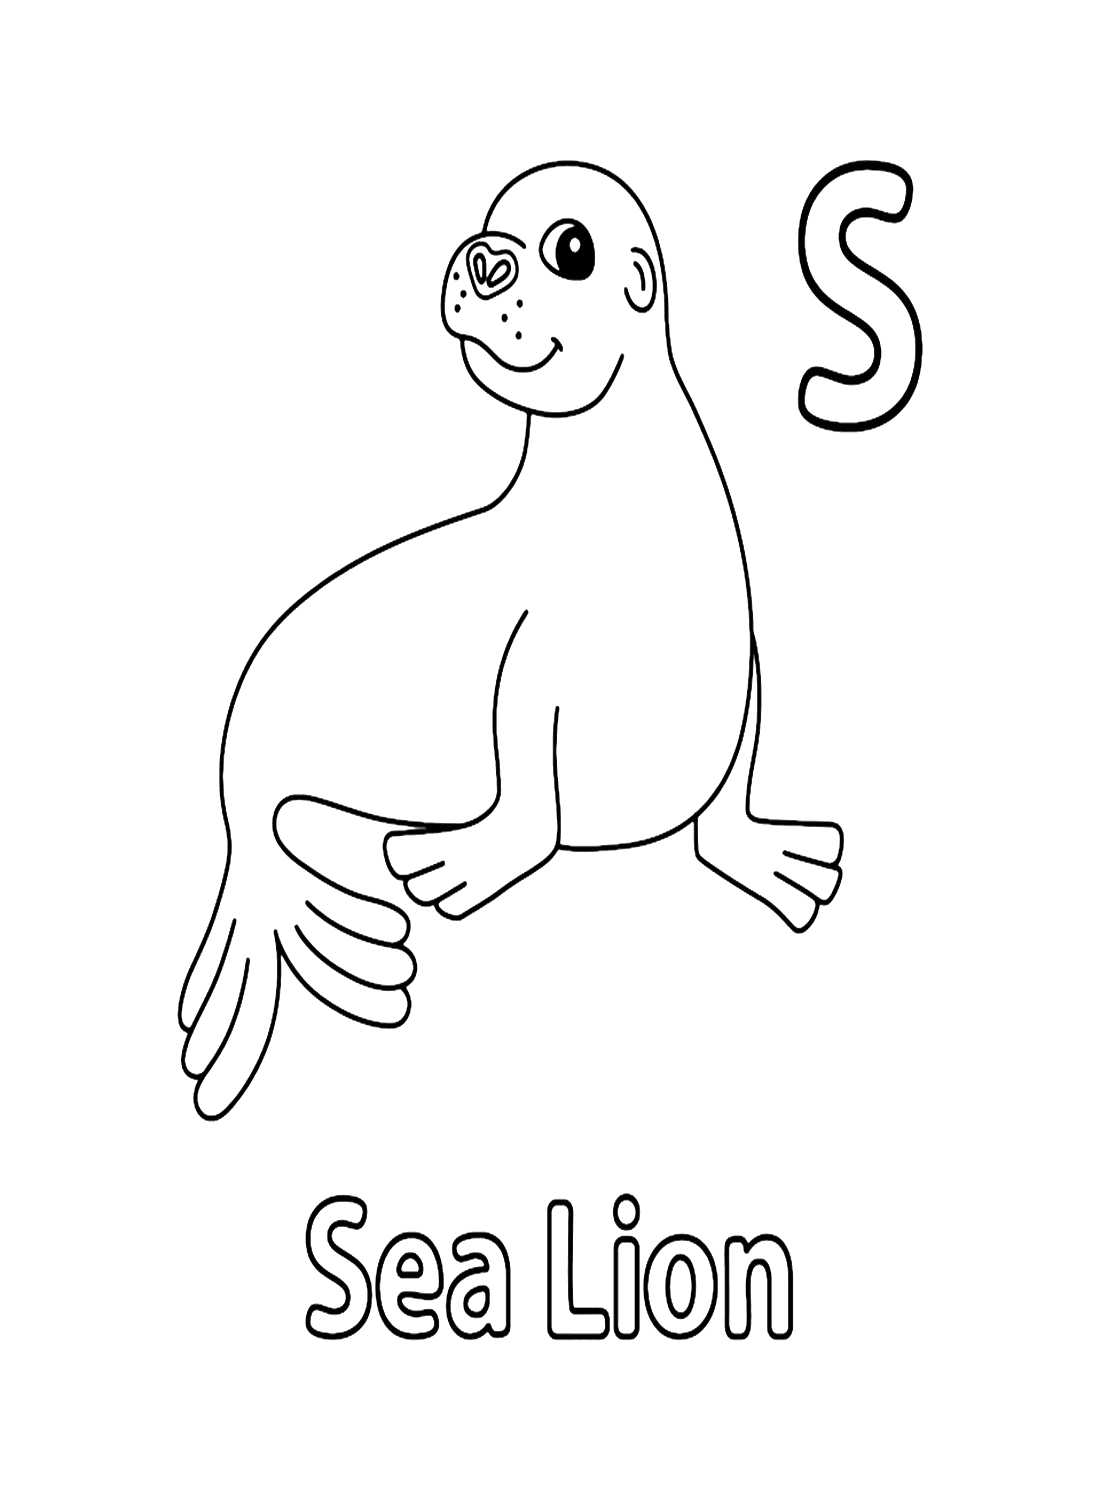 海狮的字母 S 代表海狮